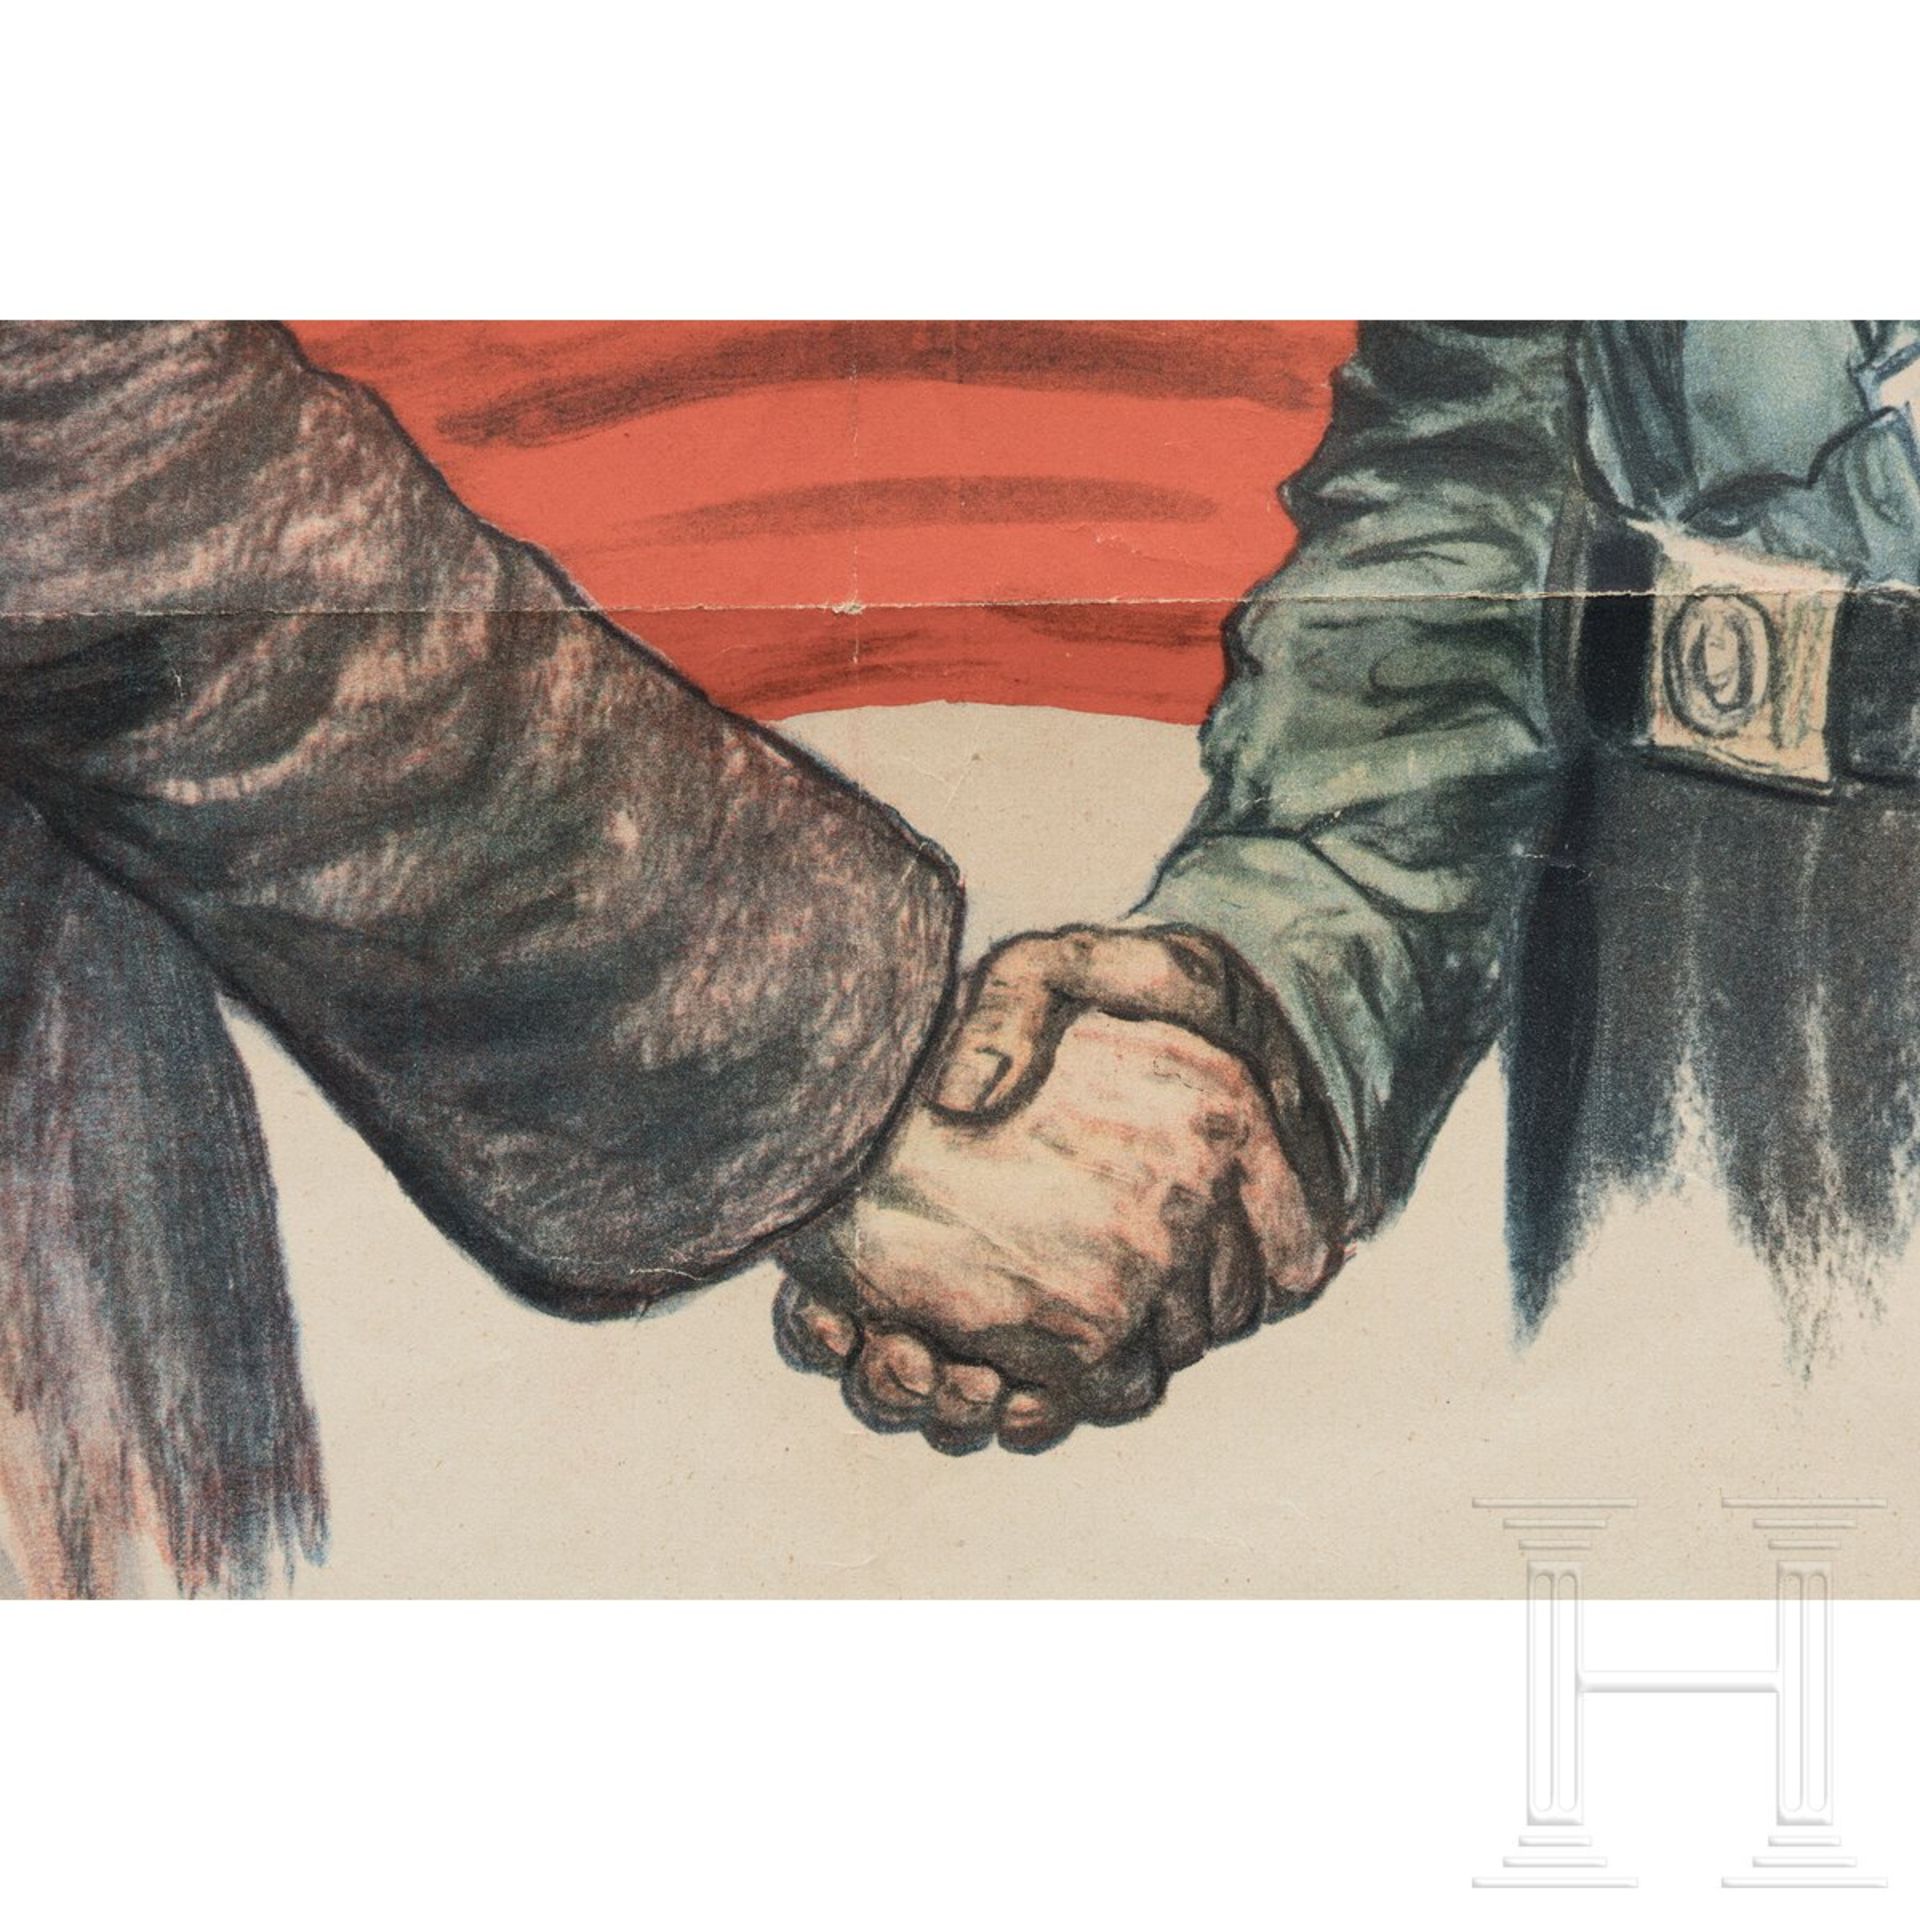 Wahlplakat "Handeln - nicht hetzen, wir gehören zusammen!" der Deutschnationalen Volkspartei, 1932 - Bild 3 aus 6